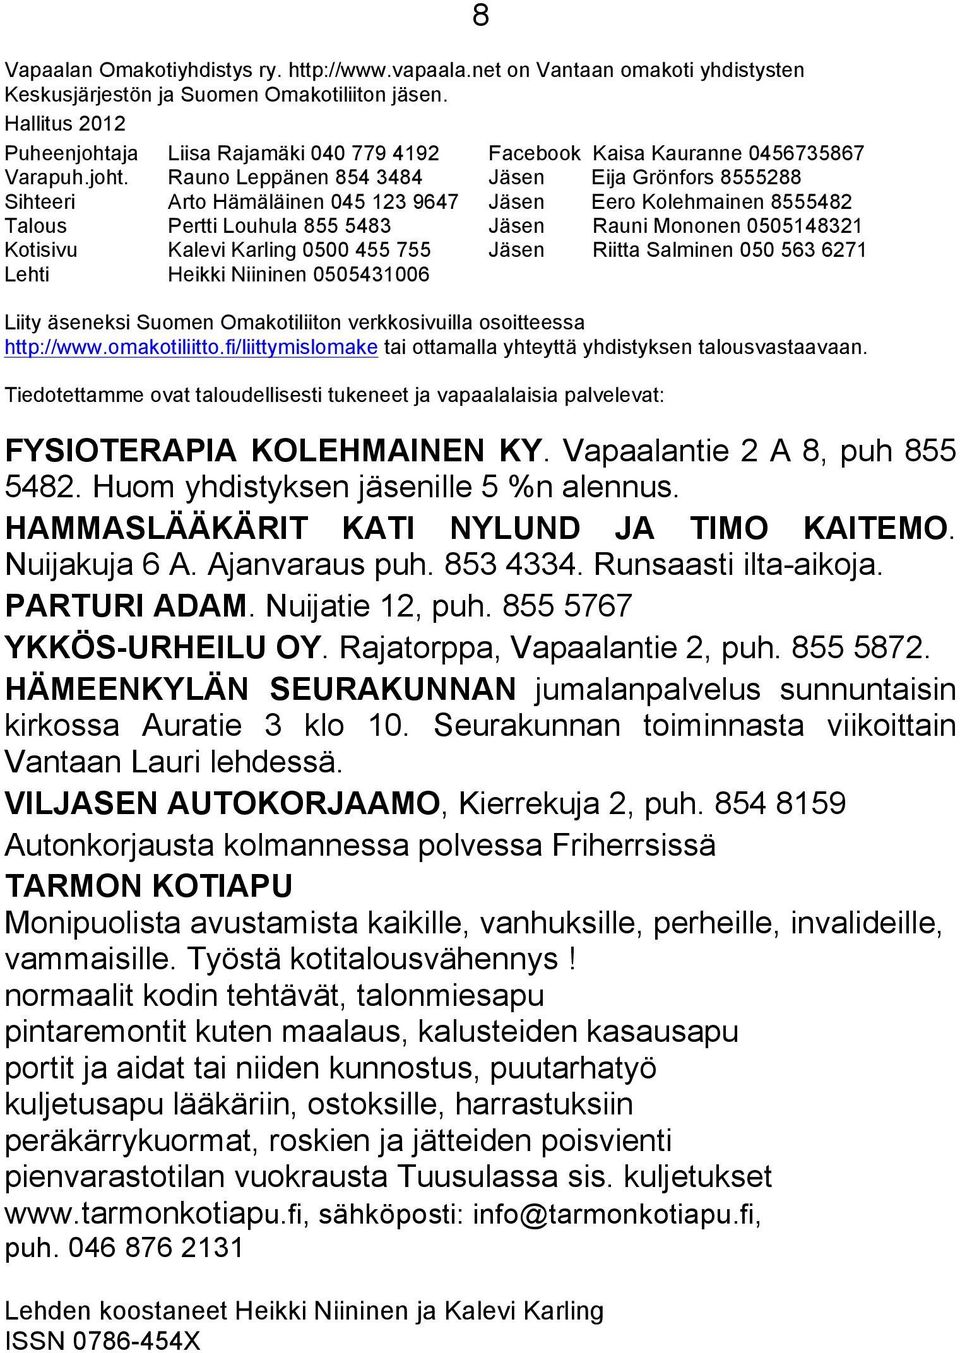 ja Liisa Rajamäki 040 779 4192 Facebook Kaisa Kauranne 0456735867 Varapuh.joht.